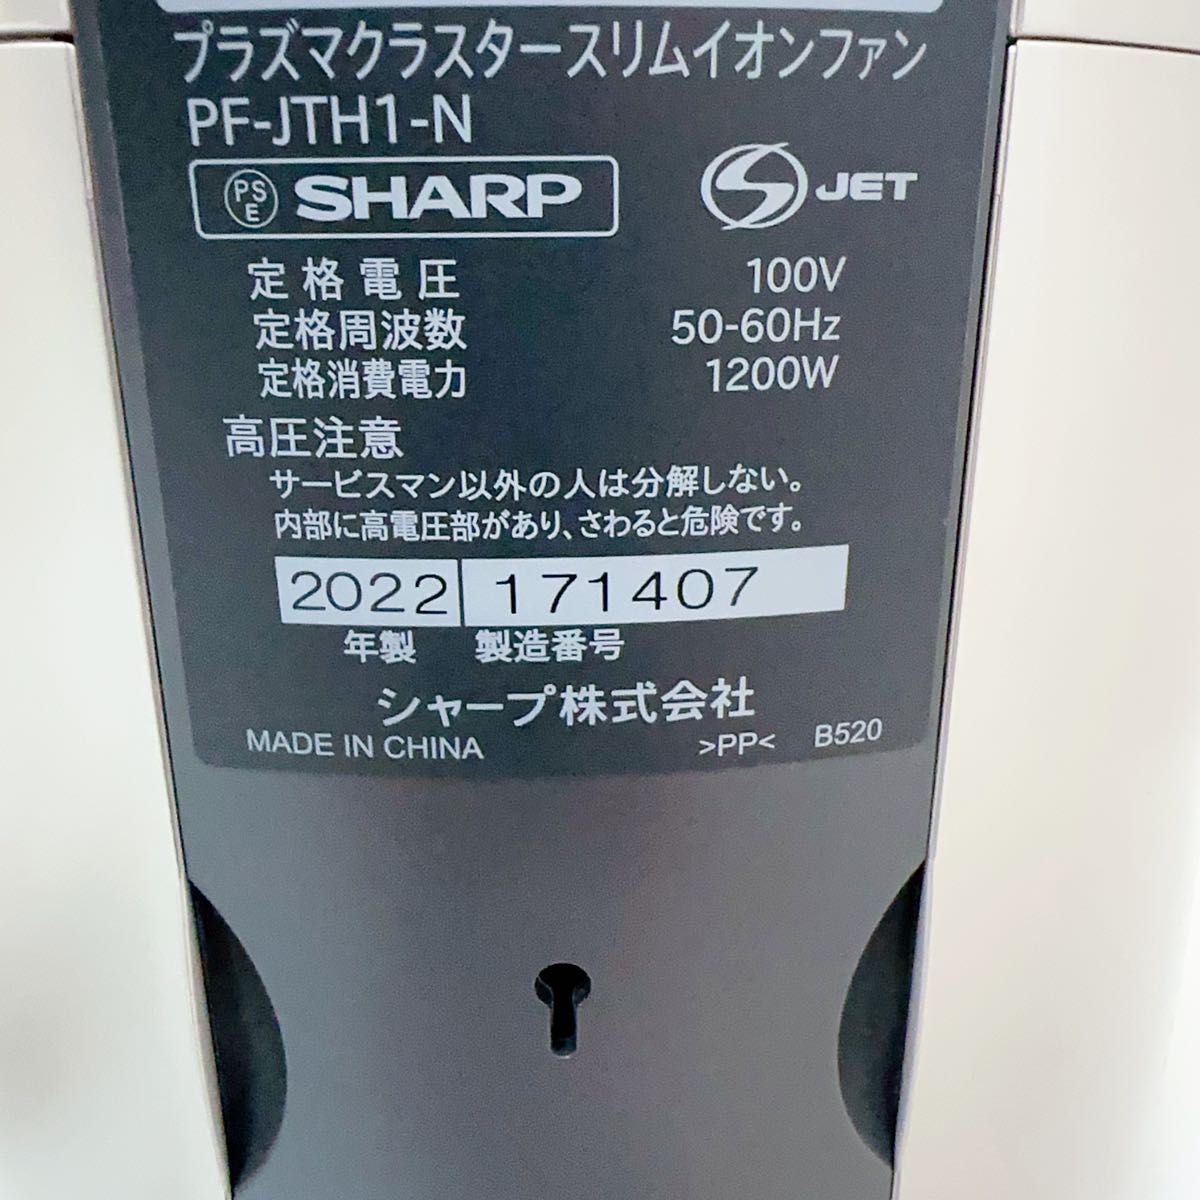 SHARP シャープ スリム イオン ファン PF-JTH1 2020年製-